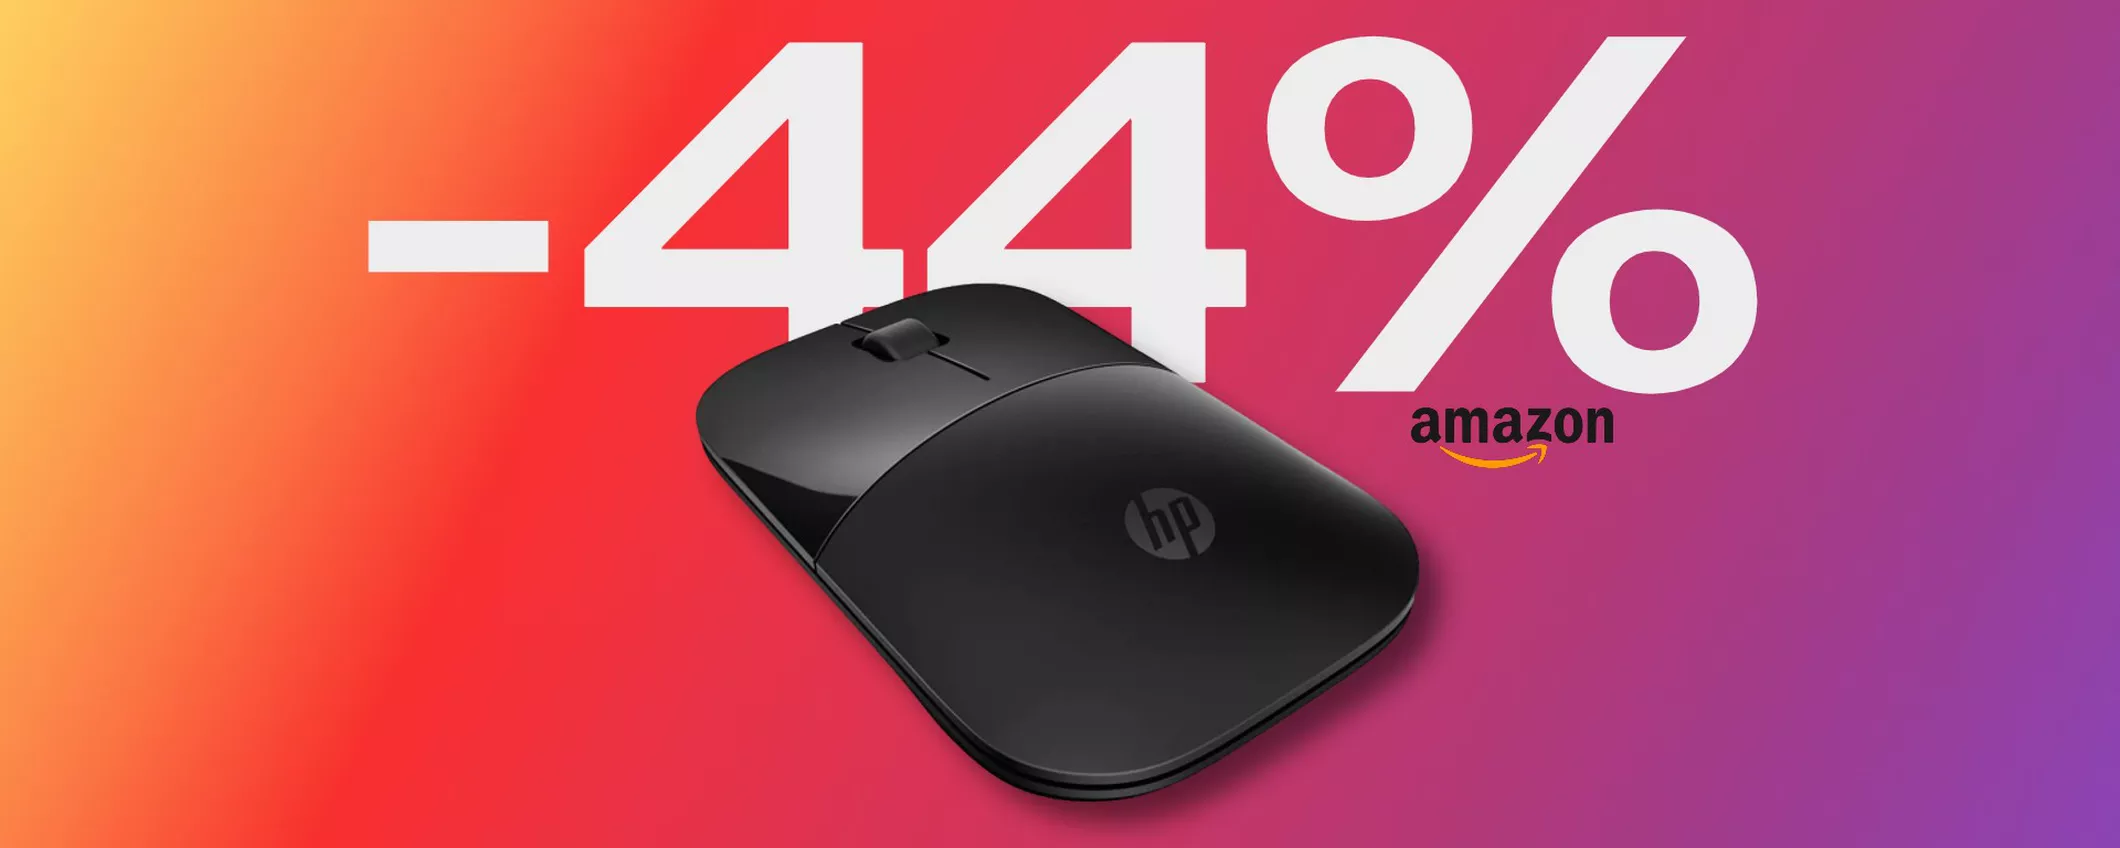 Mouse wireless HP Z3700: con lo SCONTO Amazon del 44% è REGALATO